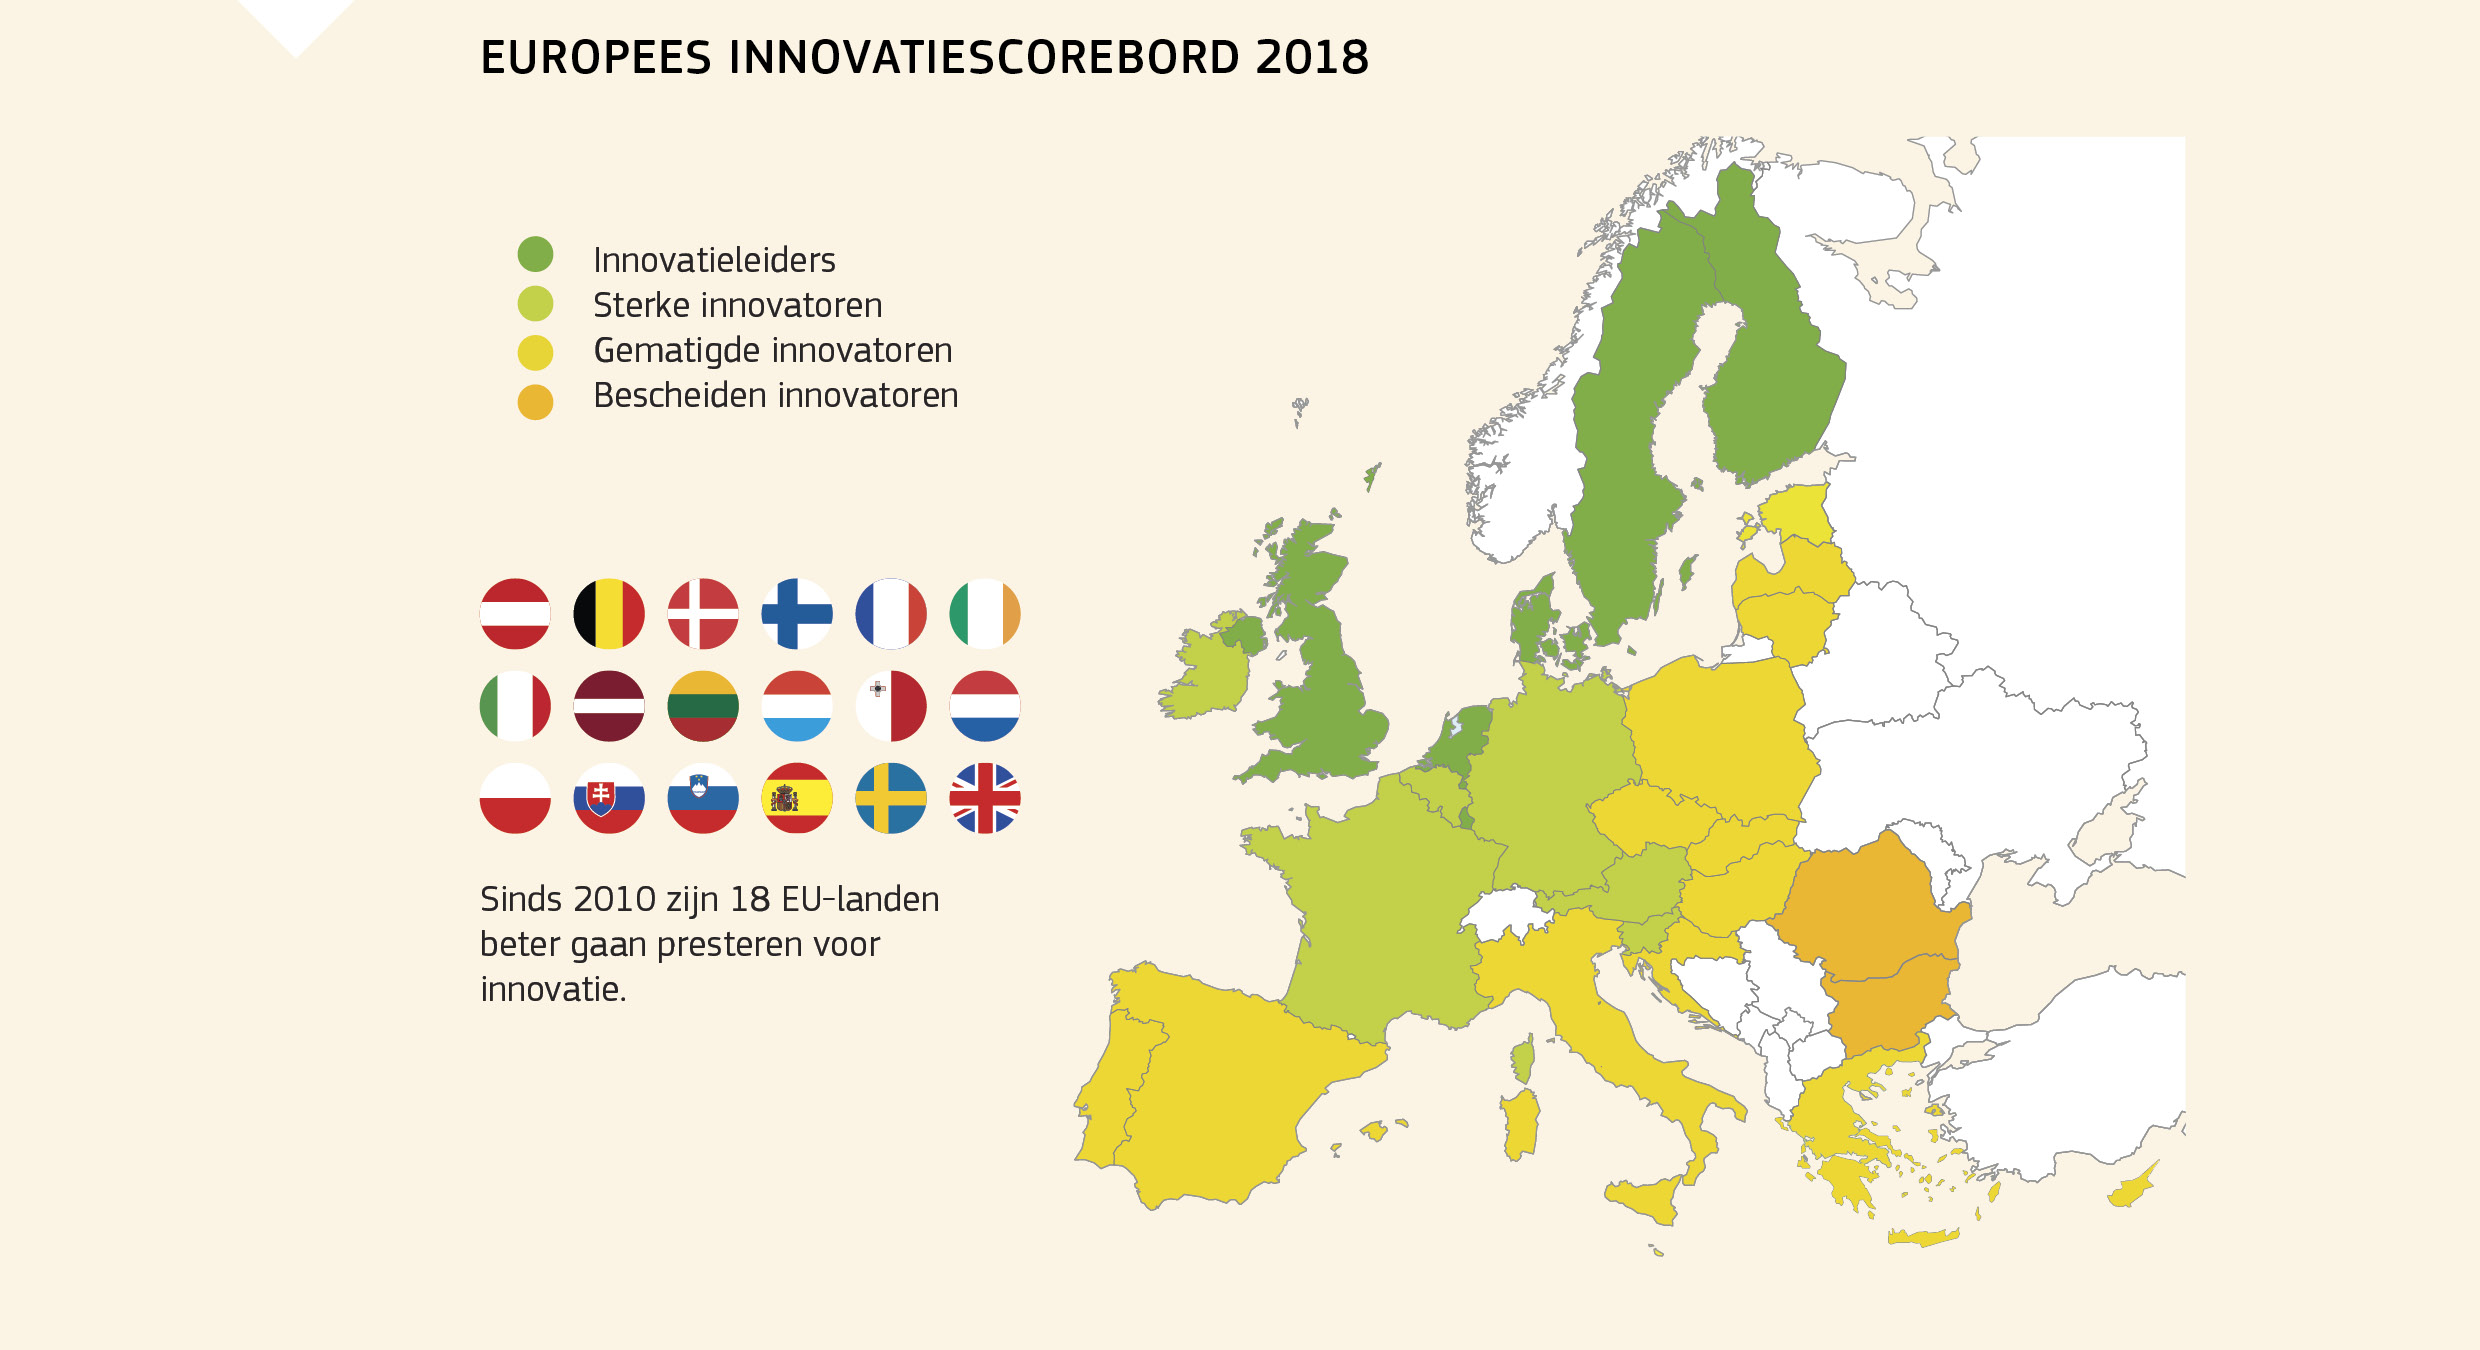 EUROPEES INNOVATIESCOREBORD 2018